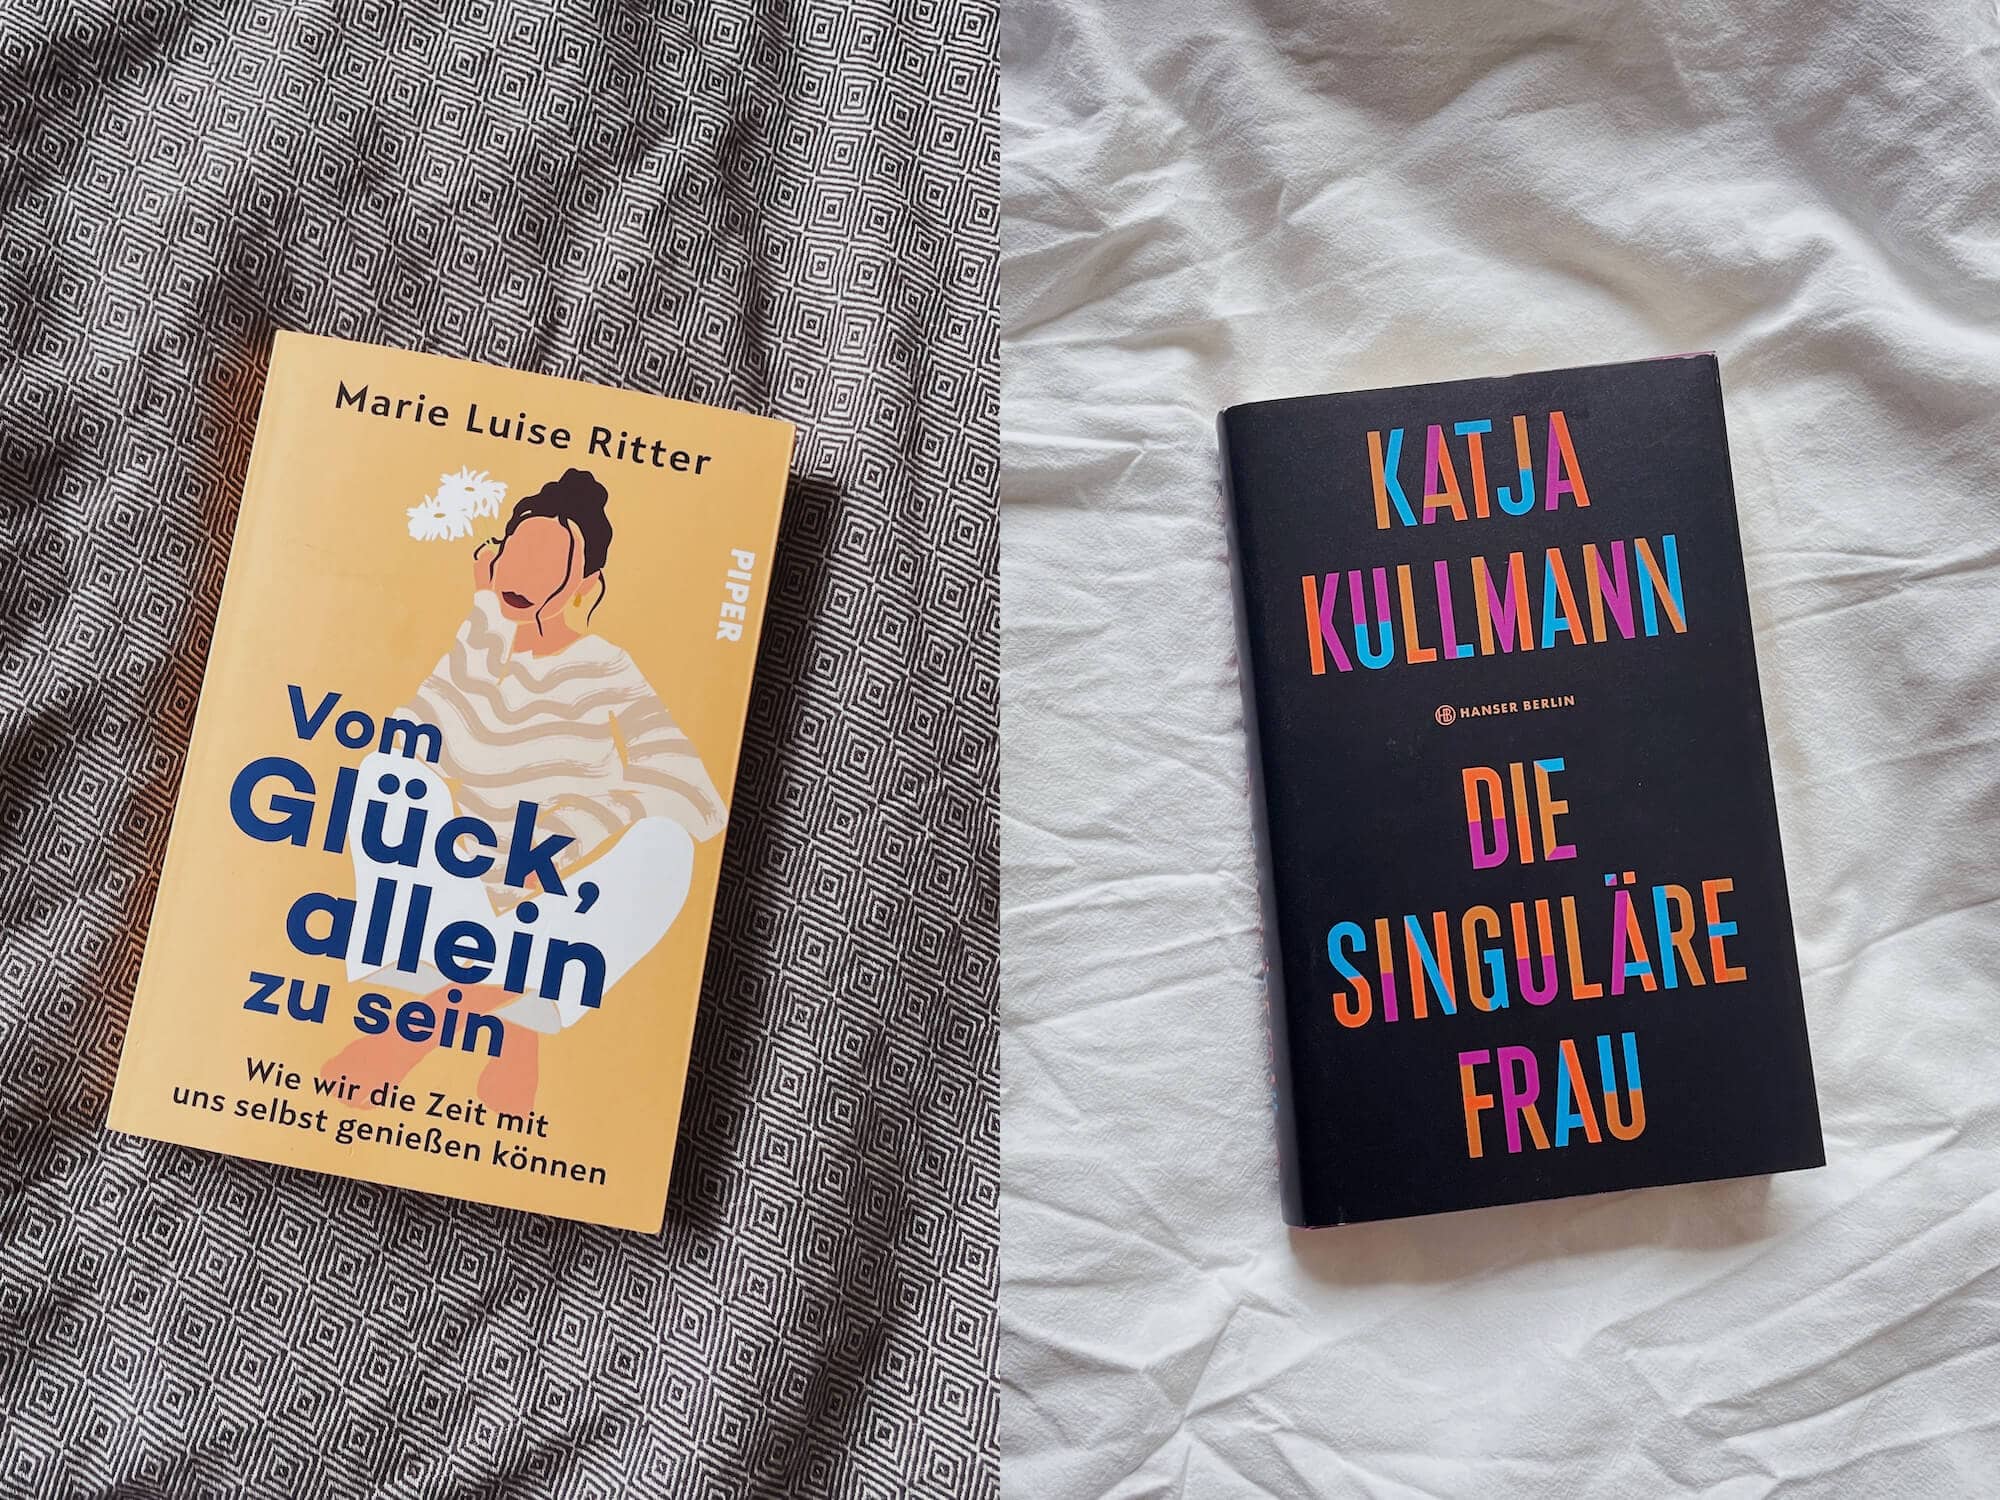 2 Bücher liegen auf dem Bett: "Vom Glück, allein zu sein" von Marie Luise Ritter und "Die Singuläre Frau" von Katja Kullmann